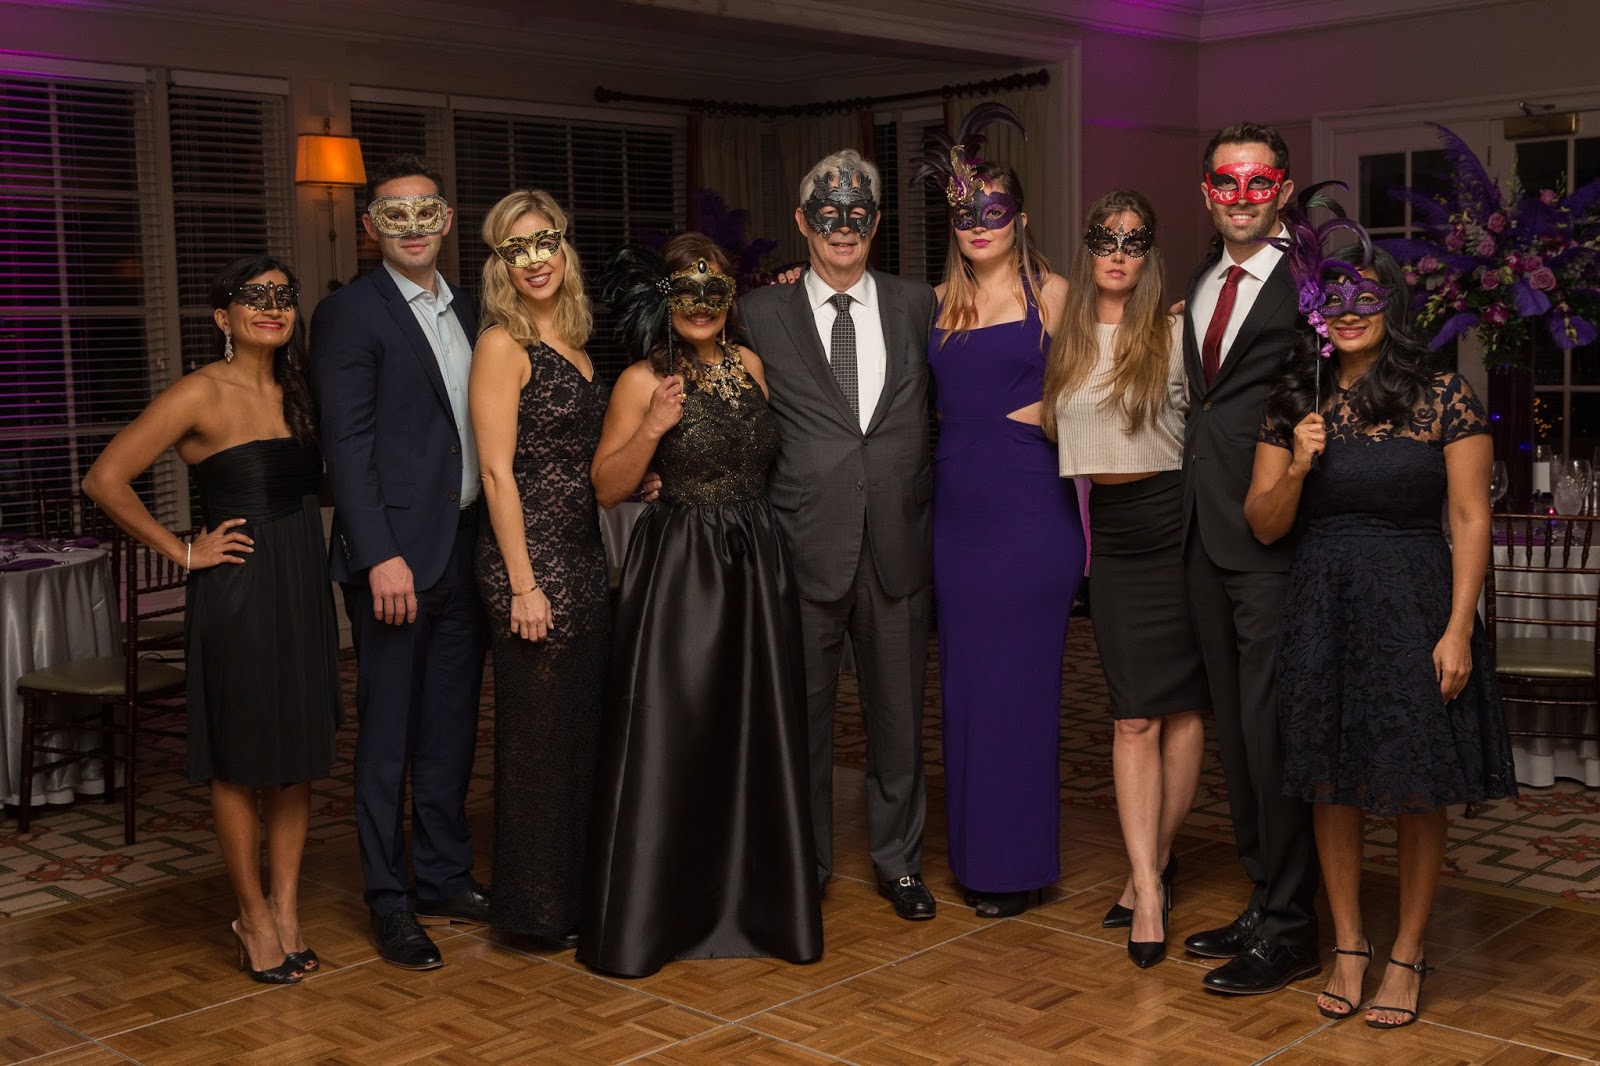 A Masquerade Ball Party - Party Ideas